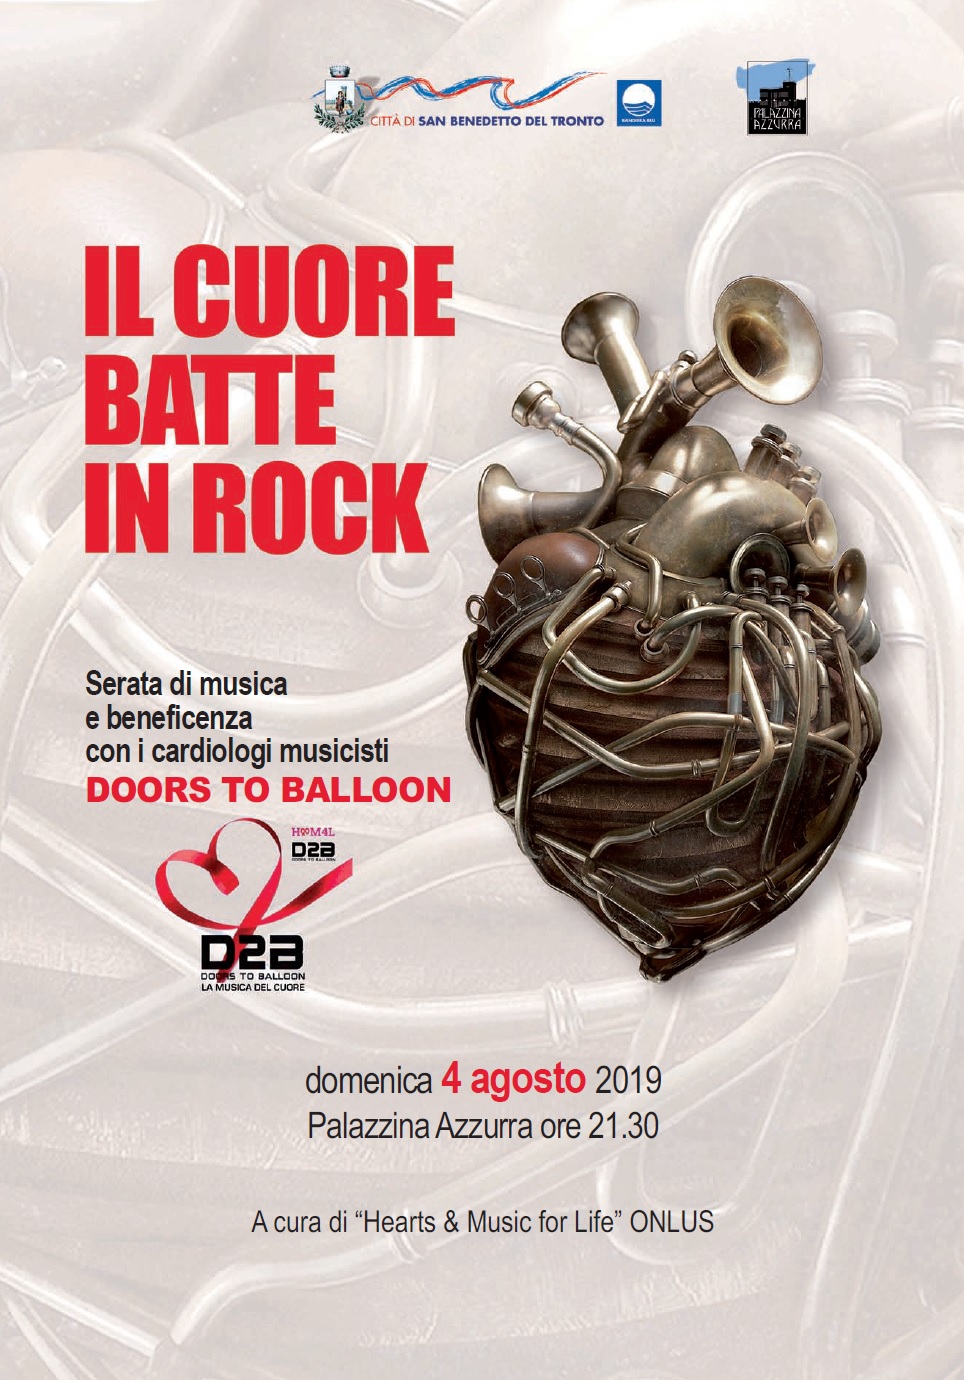 4 Agosto 2019 - Il cuore batte in rock <BR> Palazzina Azzurra  - San Benedetto del Tronto